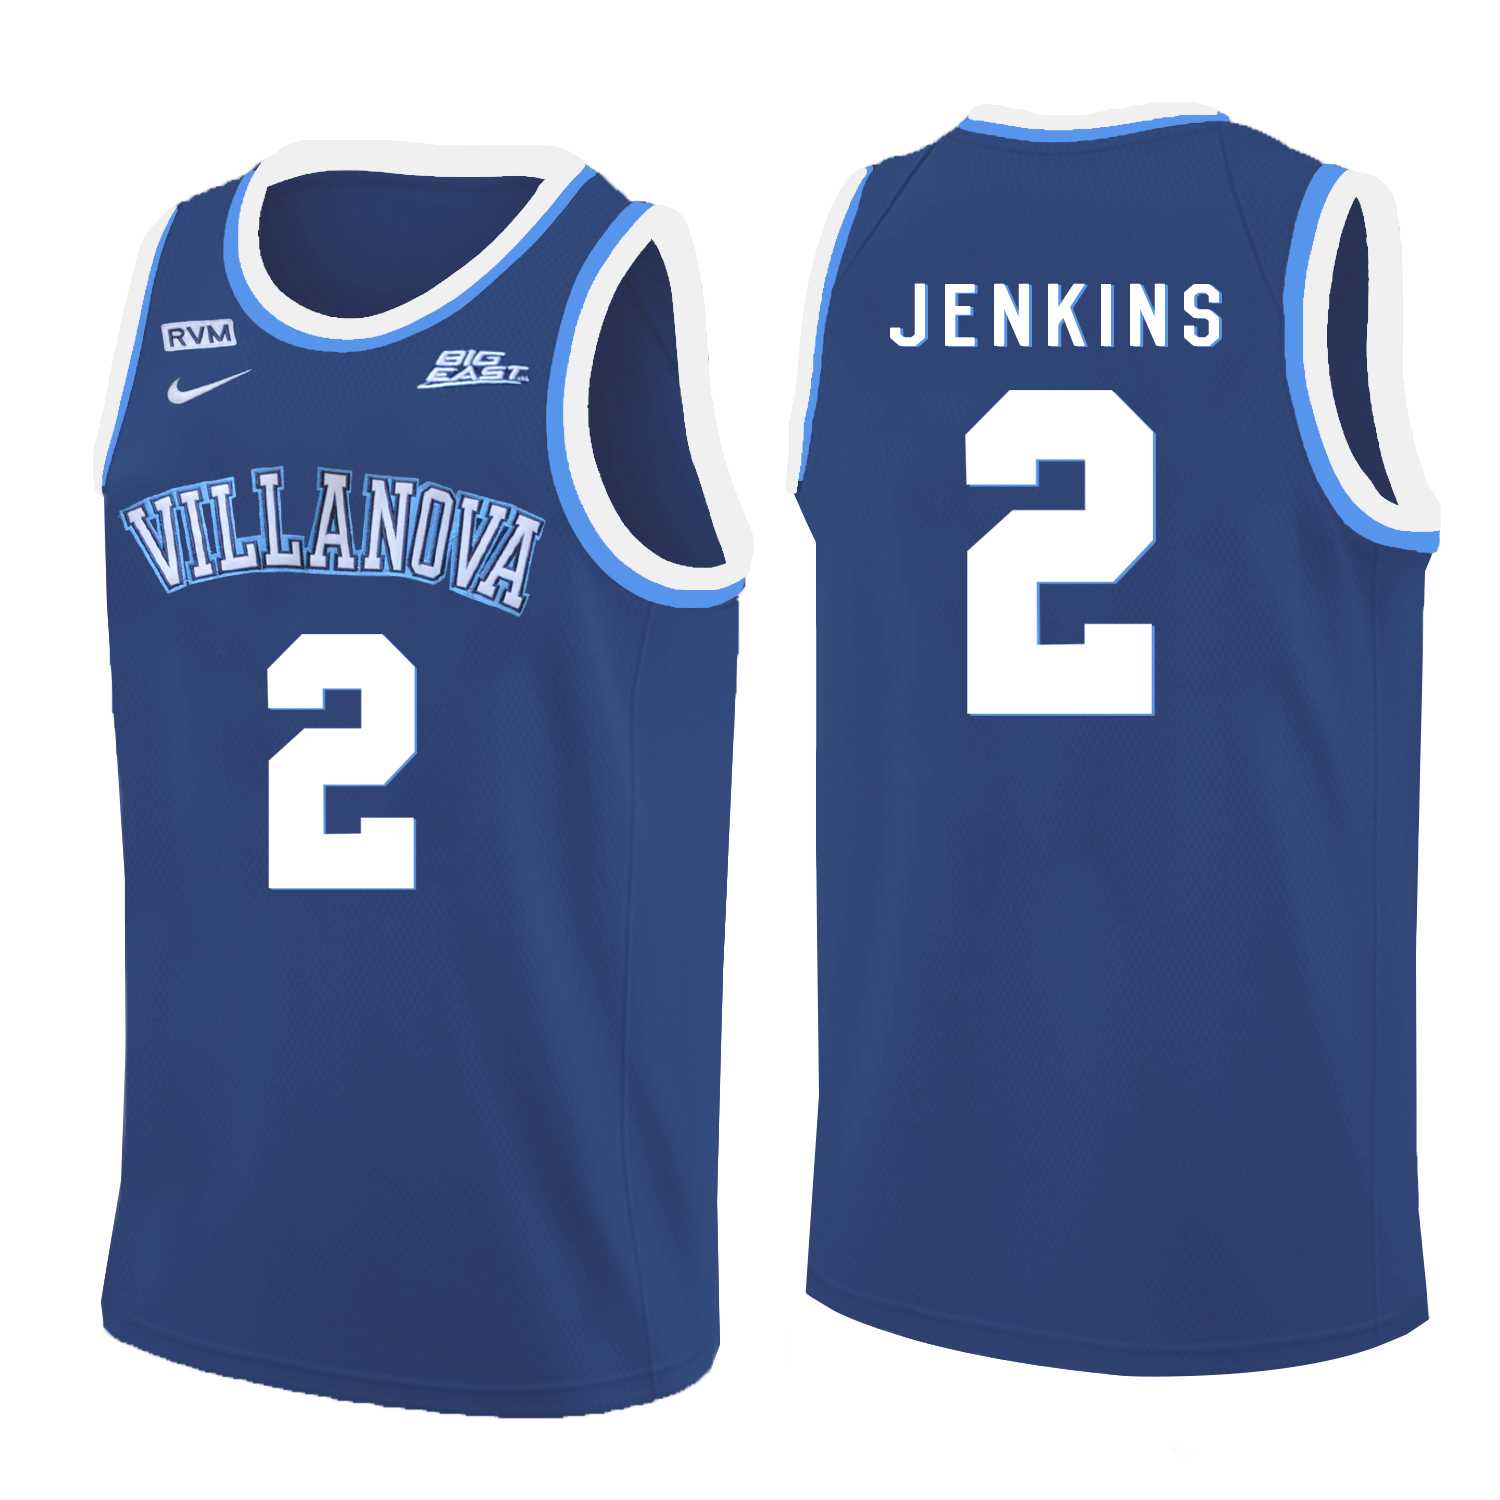 Villanova Wildcats #2 Kris Jenkins Blue College Basketball Jersey